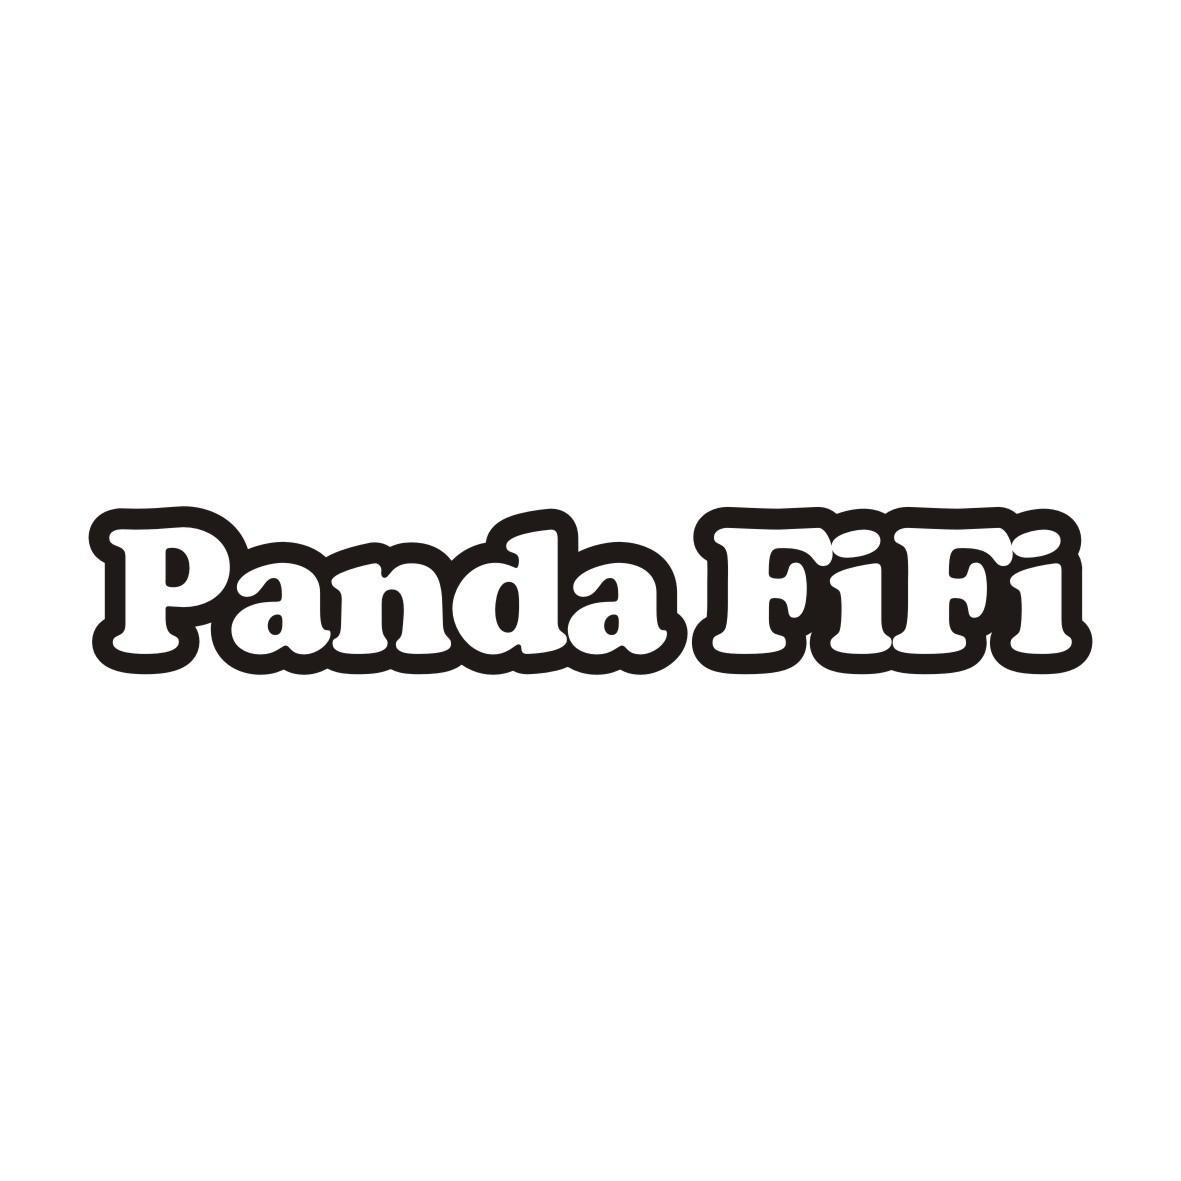 PANDA FIFI